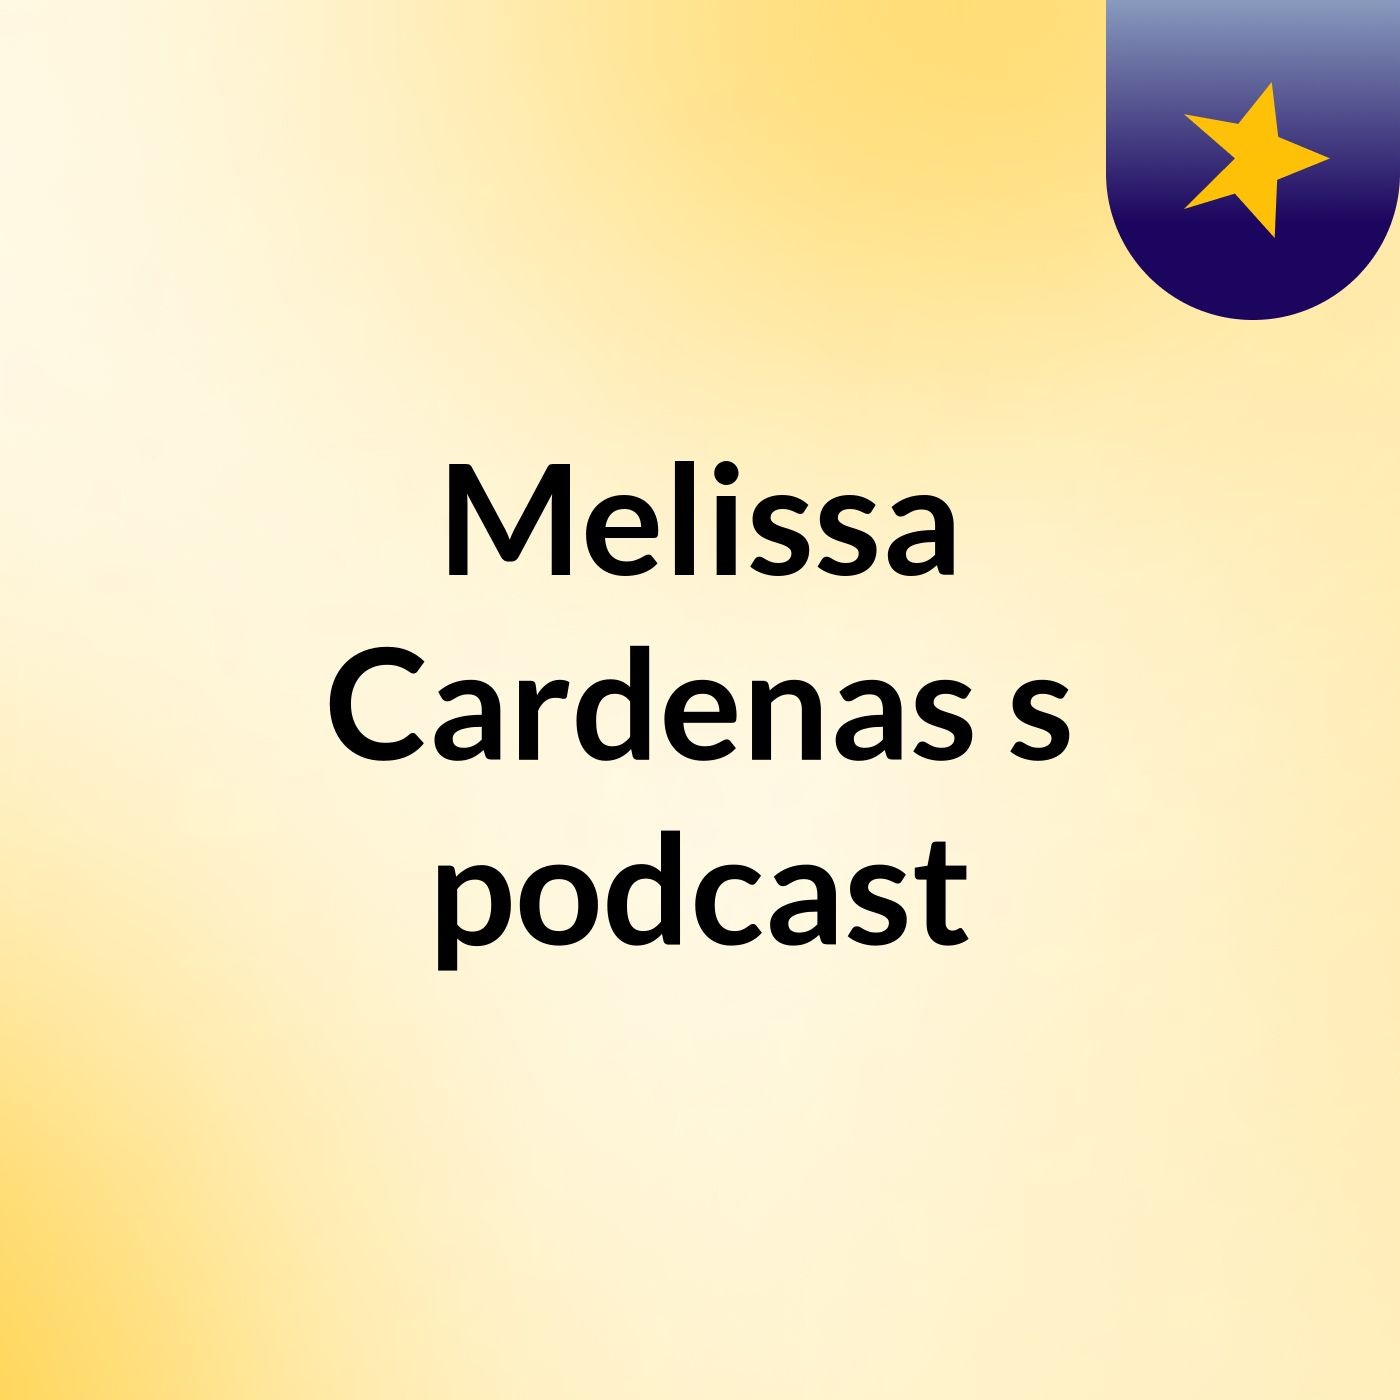 Melissa Cardenas's podcast